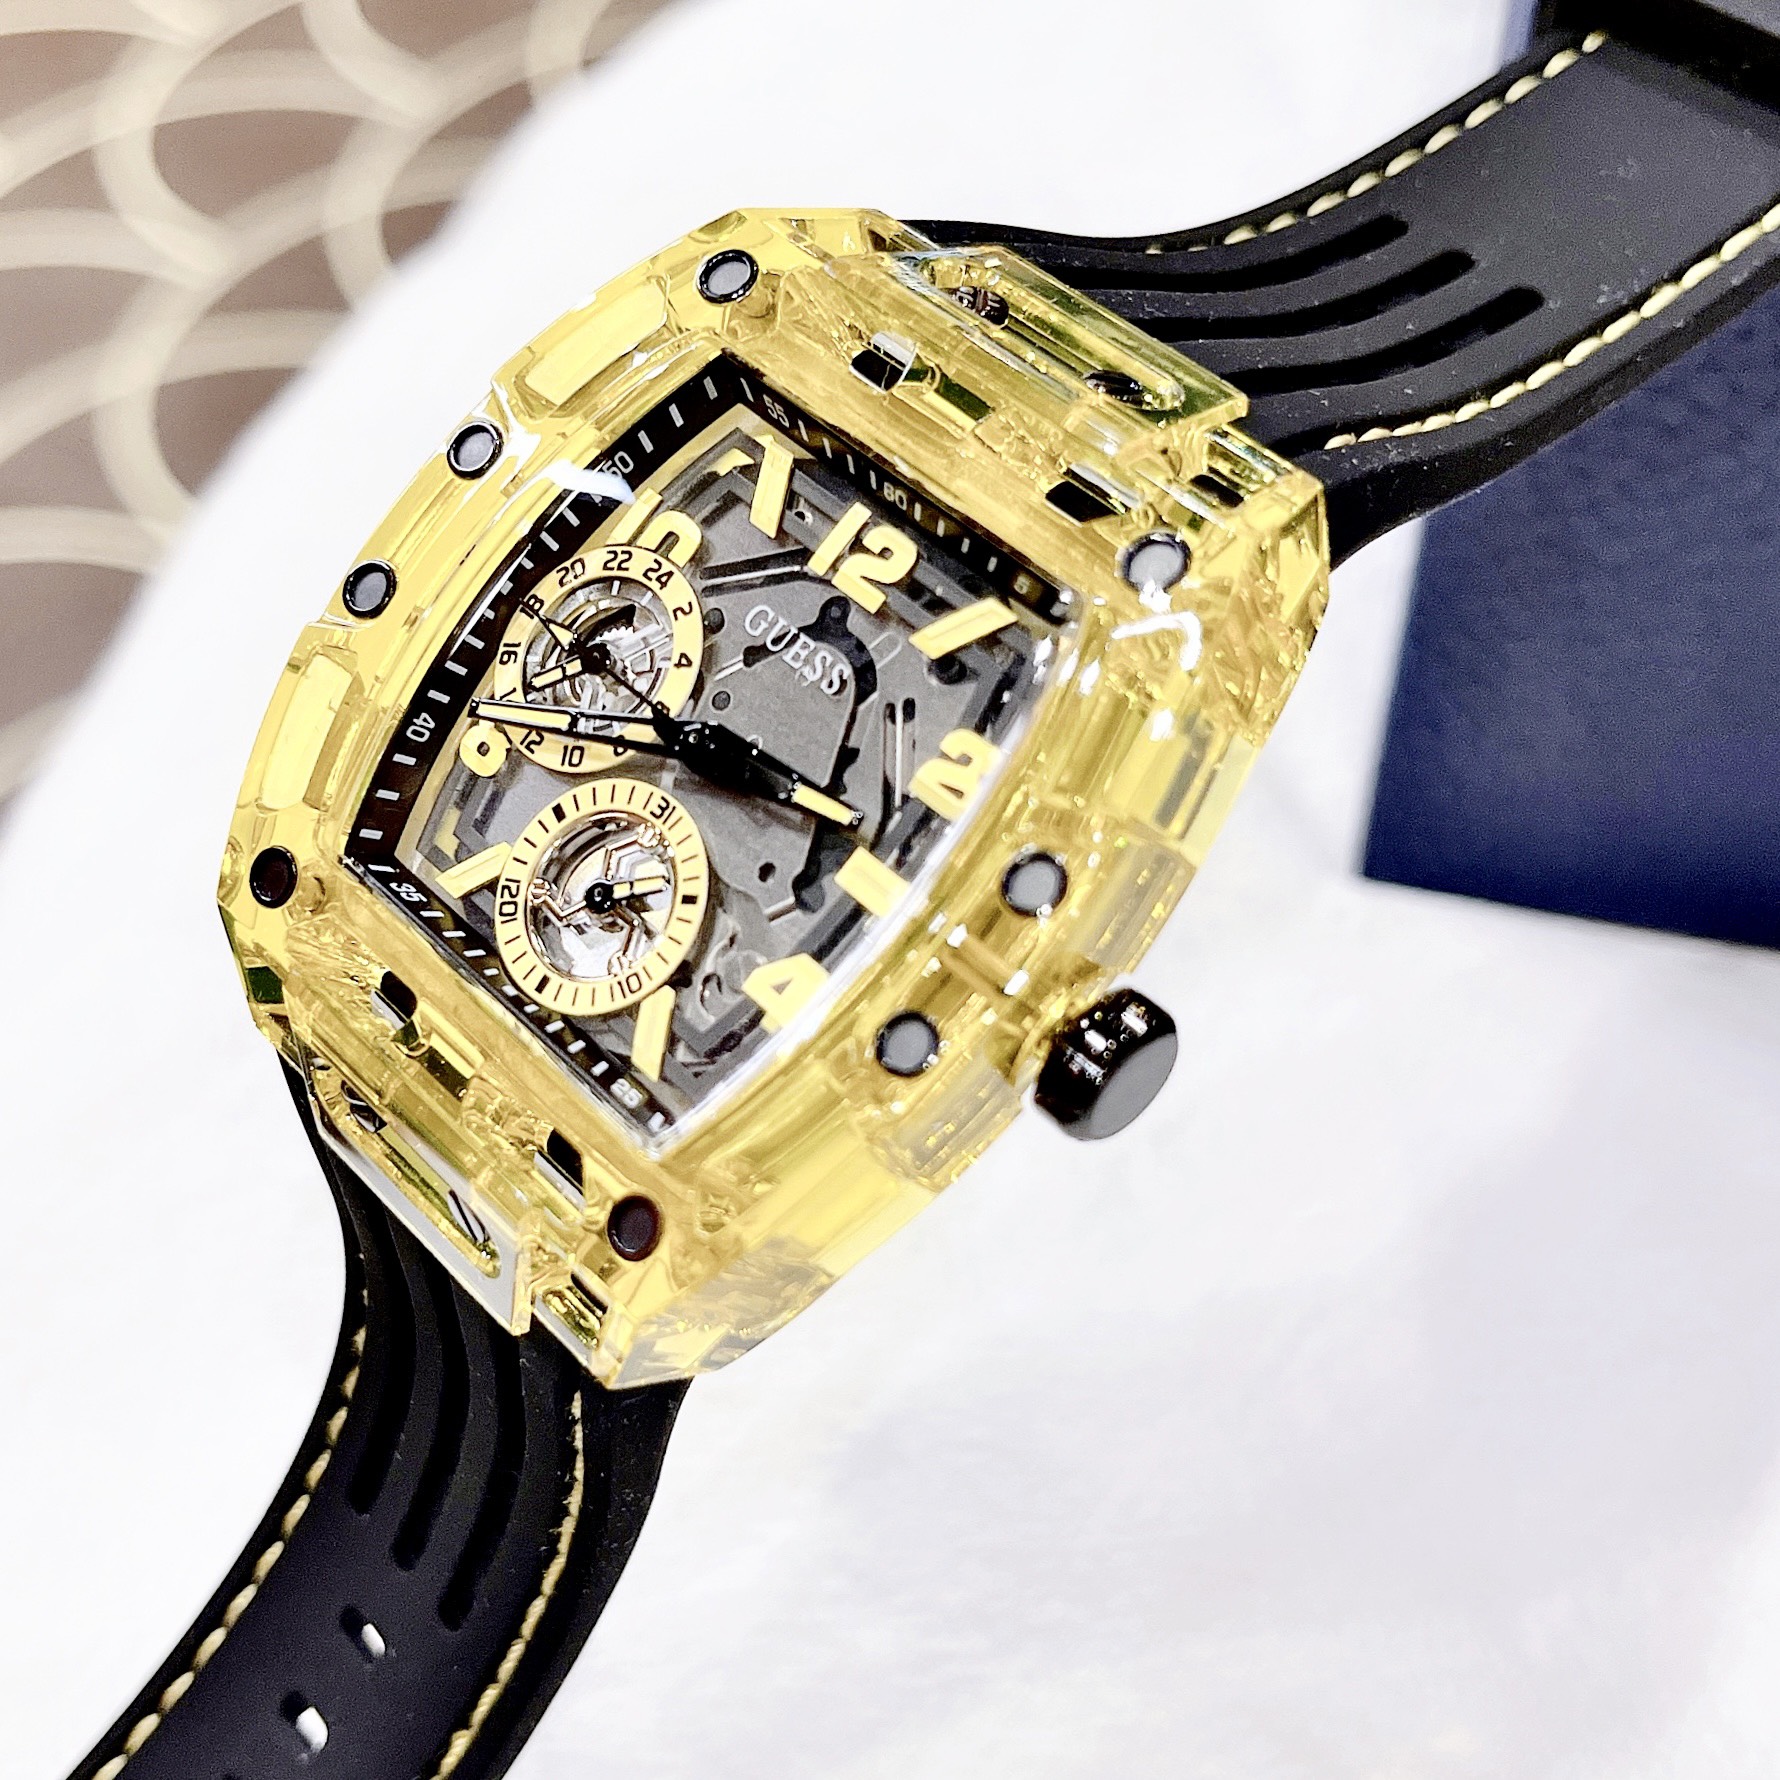 Đồng hồ nam đeo tay thời trang chống nước dây cao su GUE$$ GW0499G1 GW0499G2 GW0499G3 mạ carbon size 43 x 51mm fullbox , vỏ thép không gỉ , cao cấp sang trọng , shop kiwi